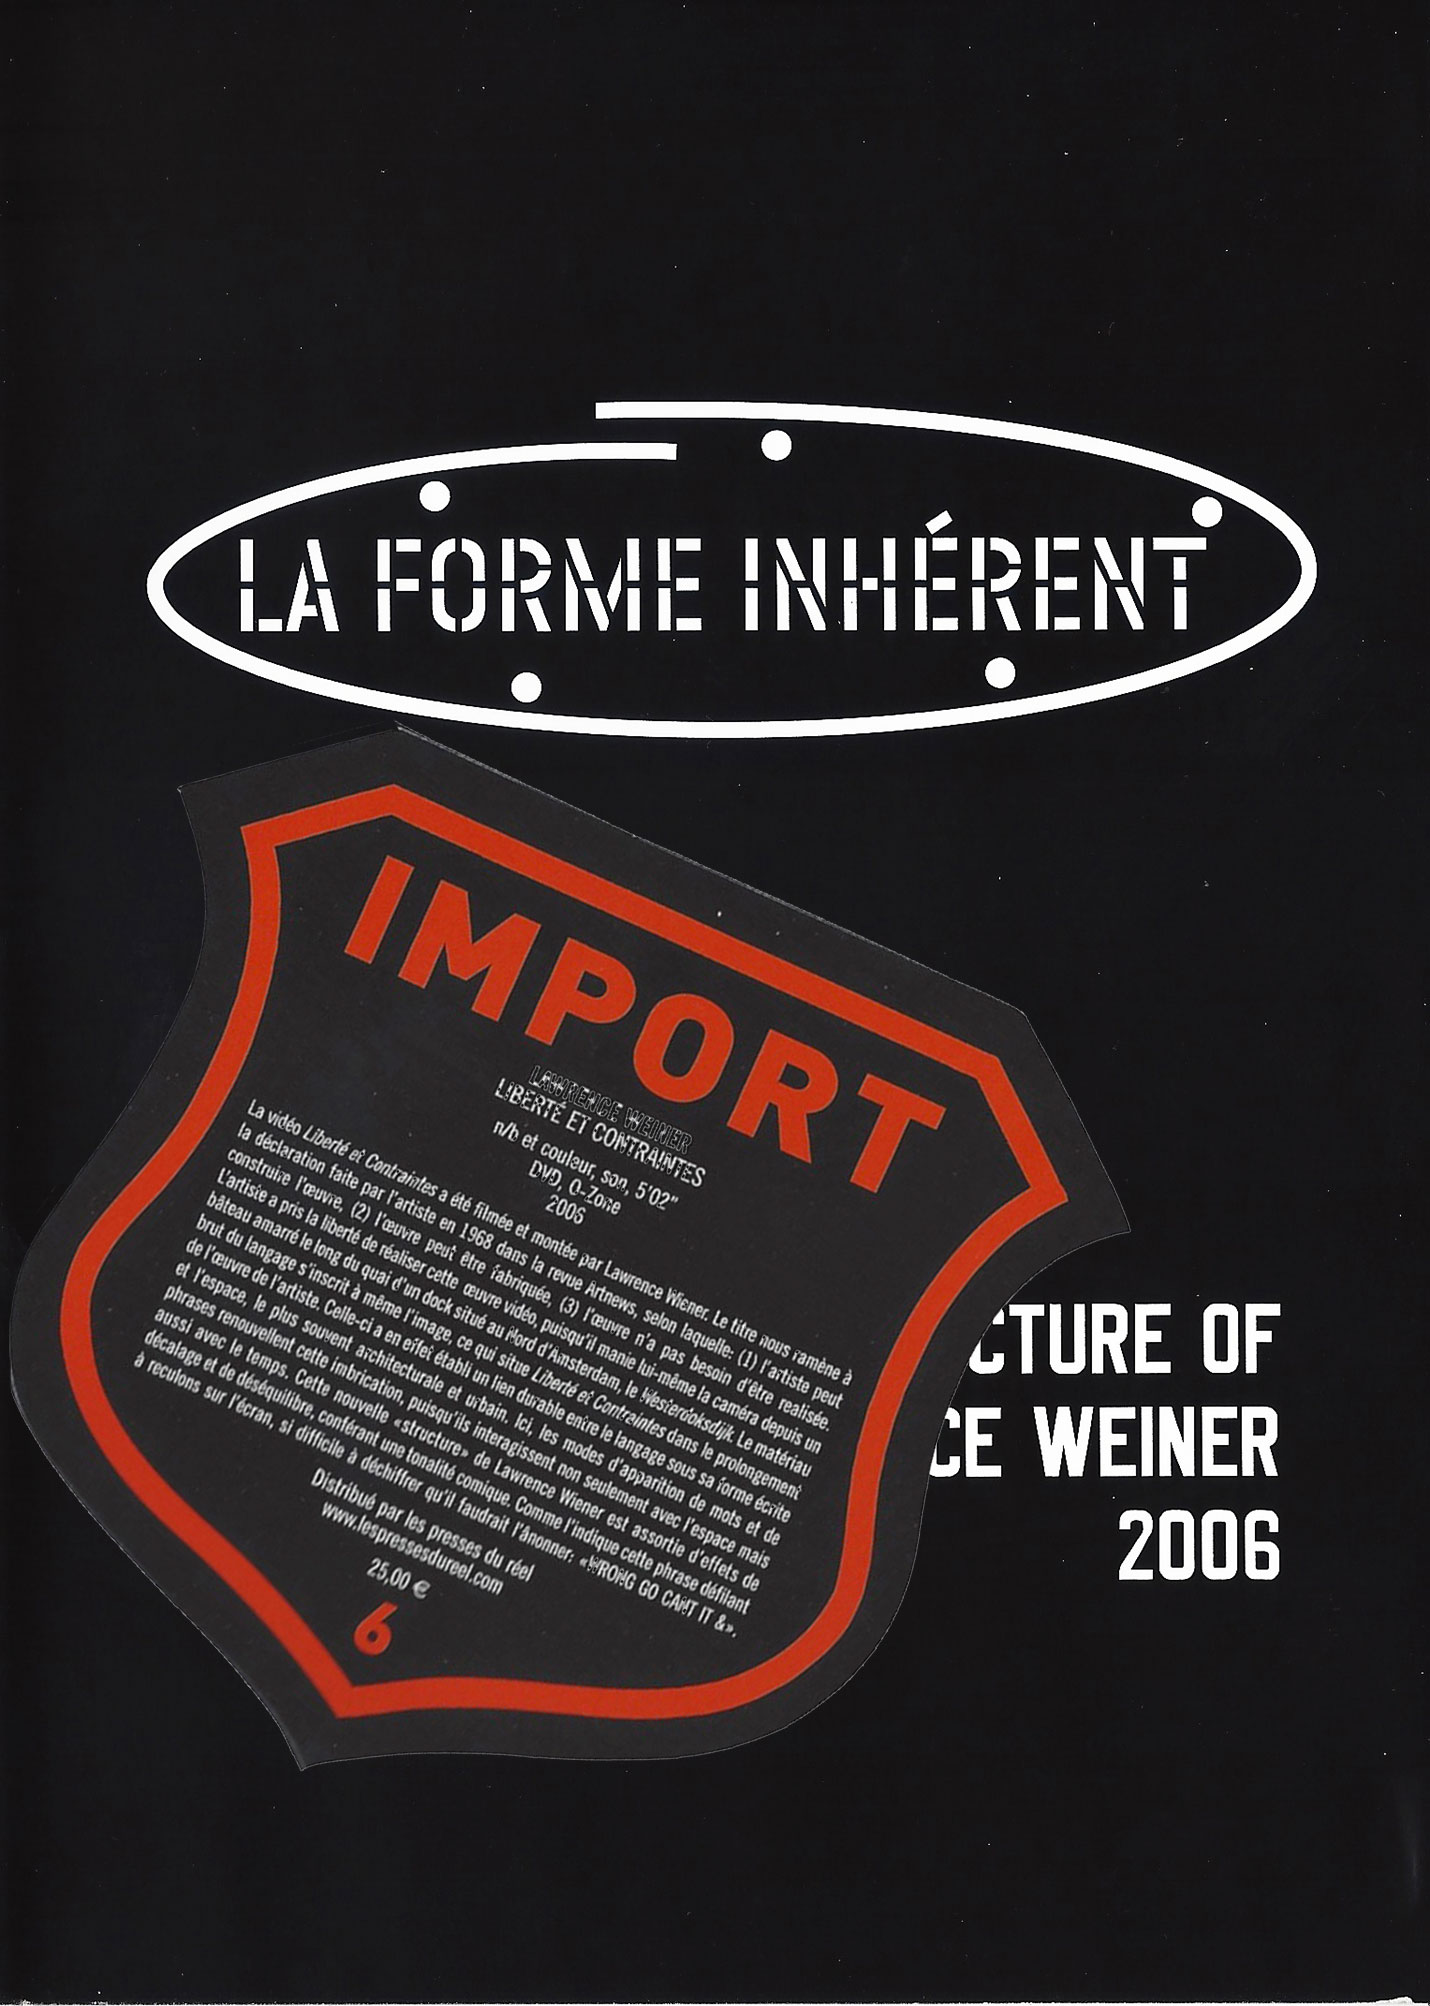 Lawrence Weiner - Liberté et contraintes, 2006